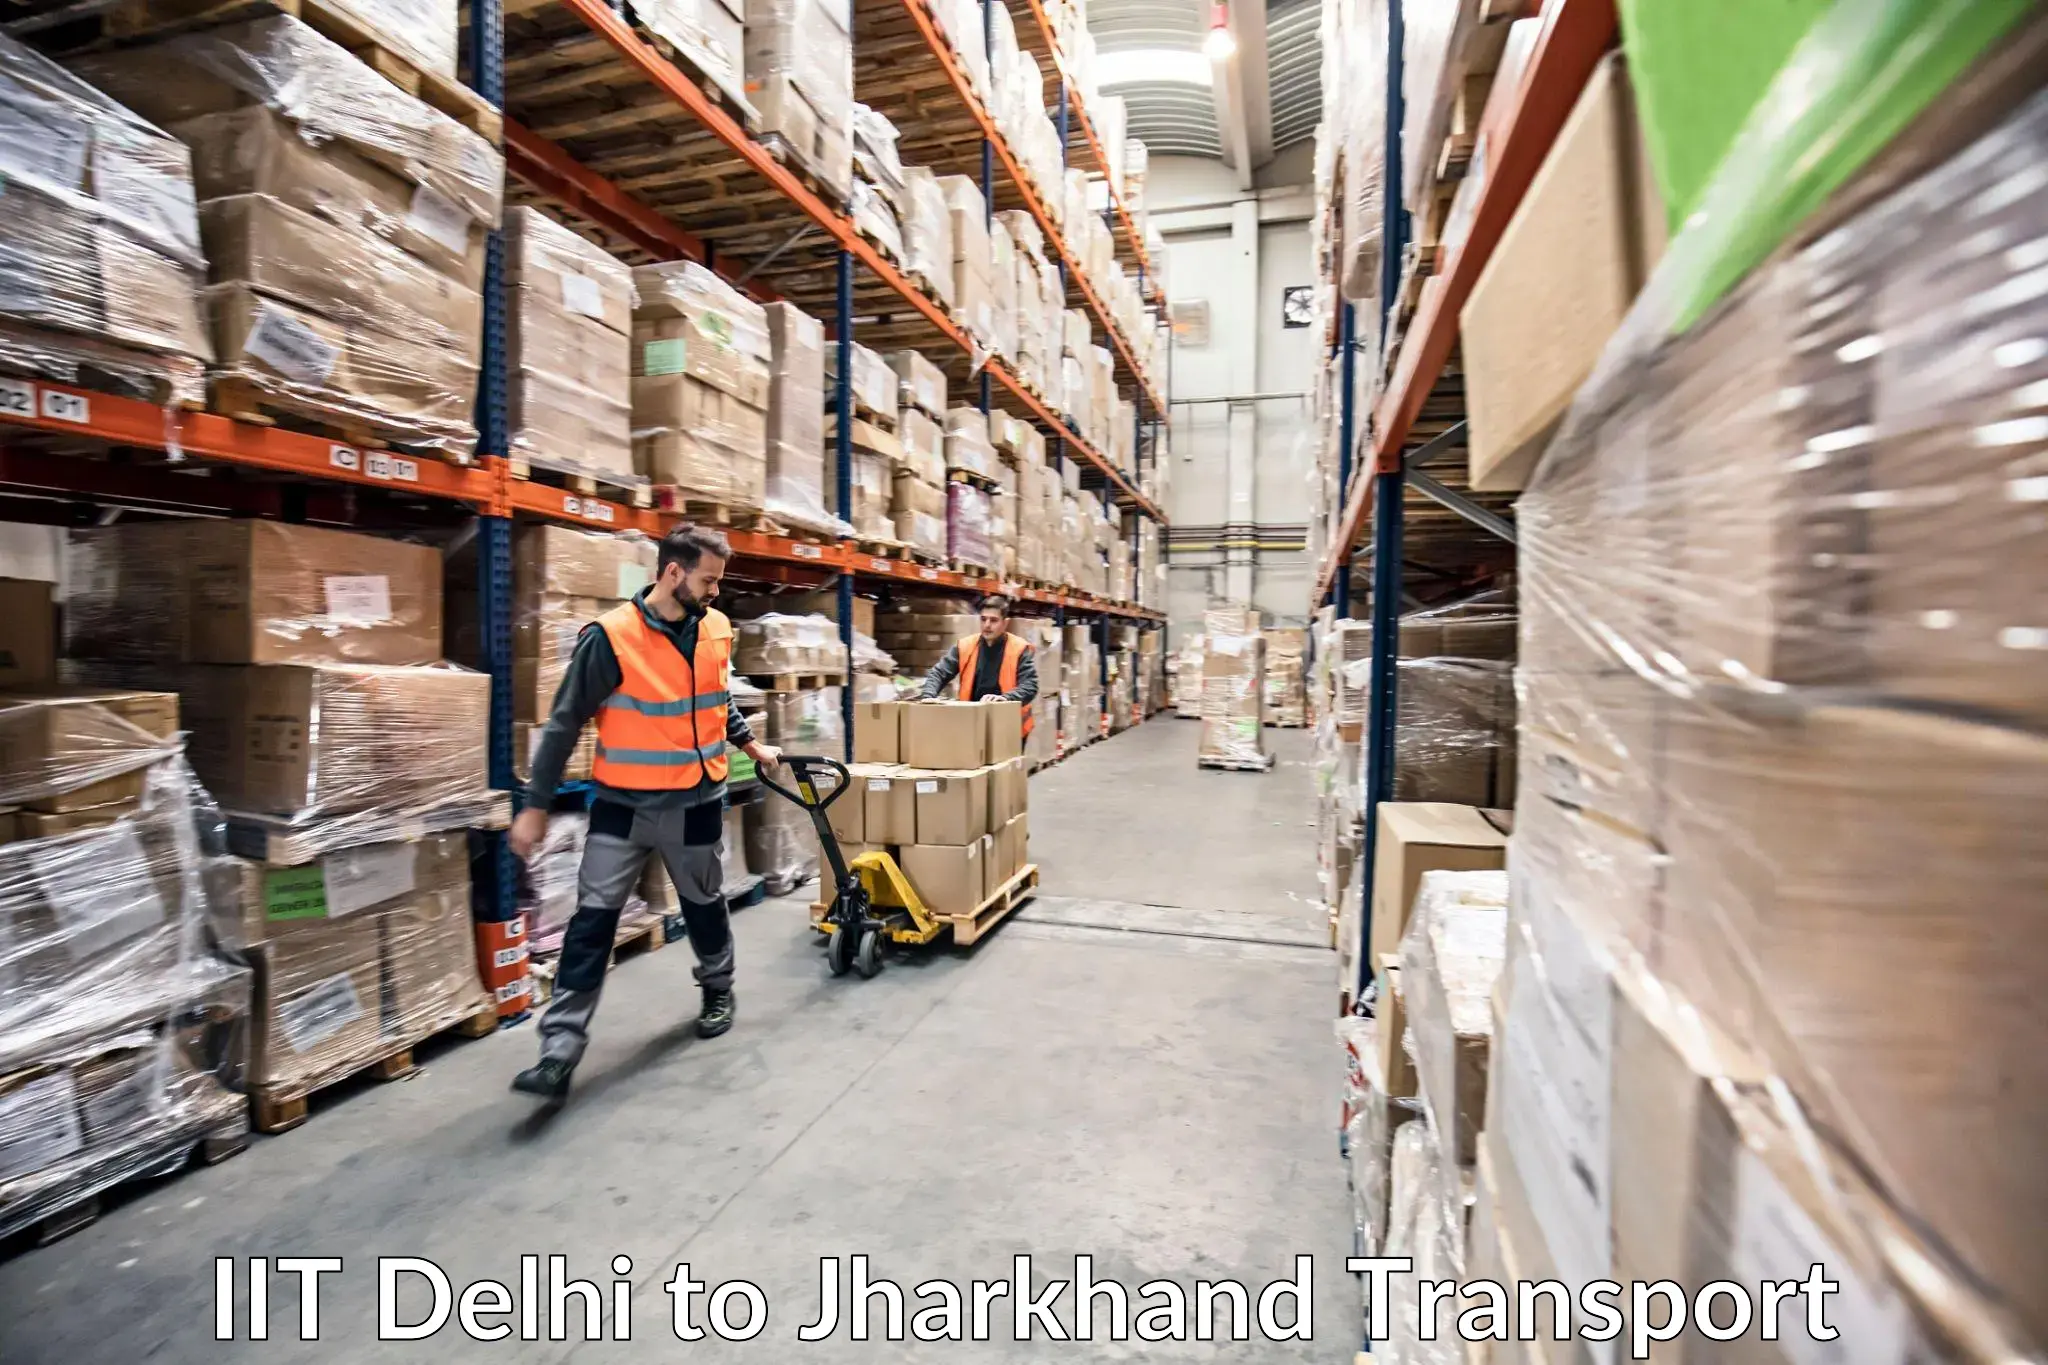 Shipping partner IIT Delhi to Chandankiyari